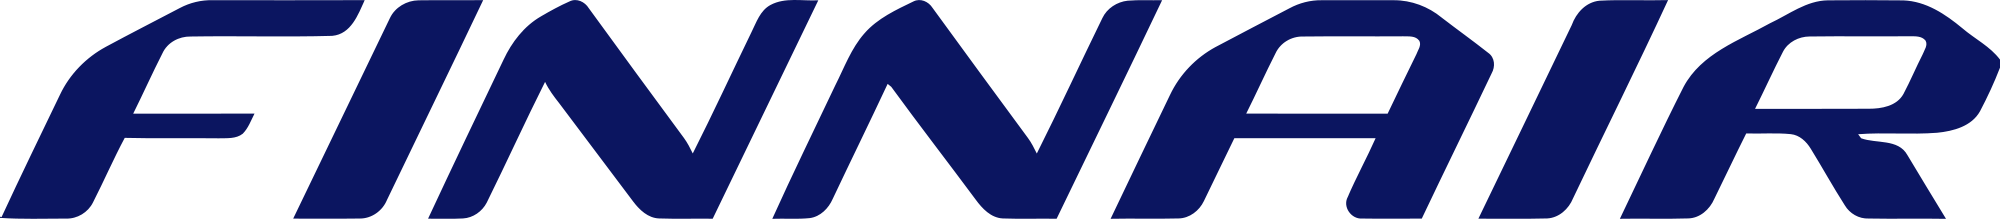 2000px-finnair_logo.svg_